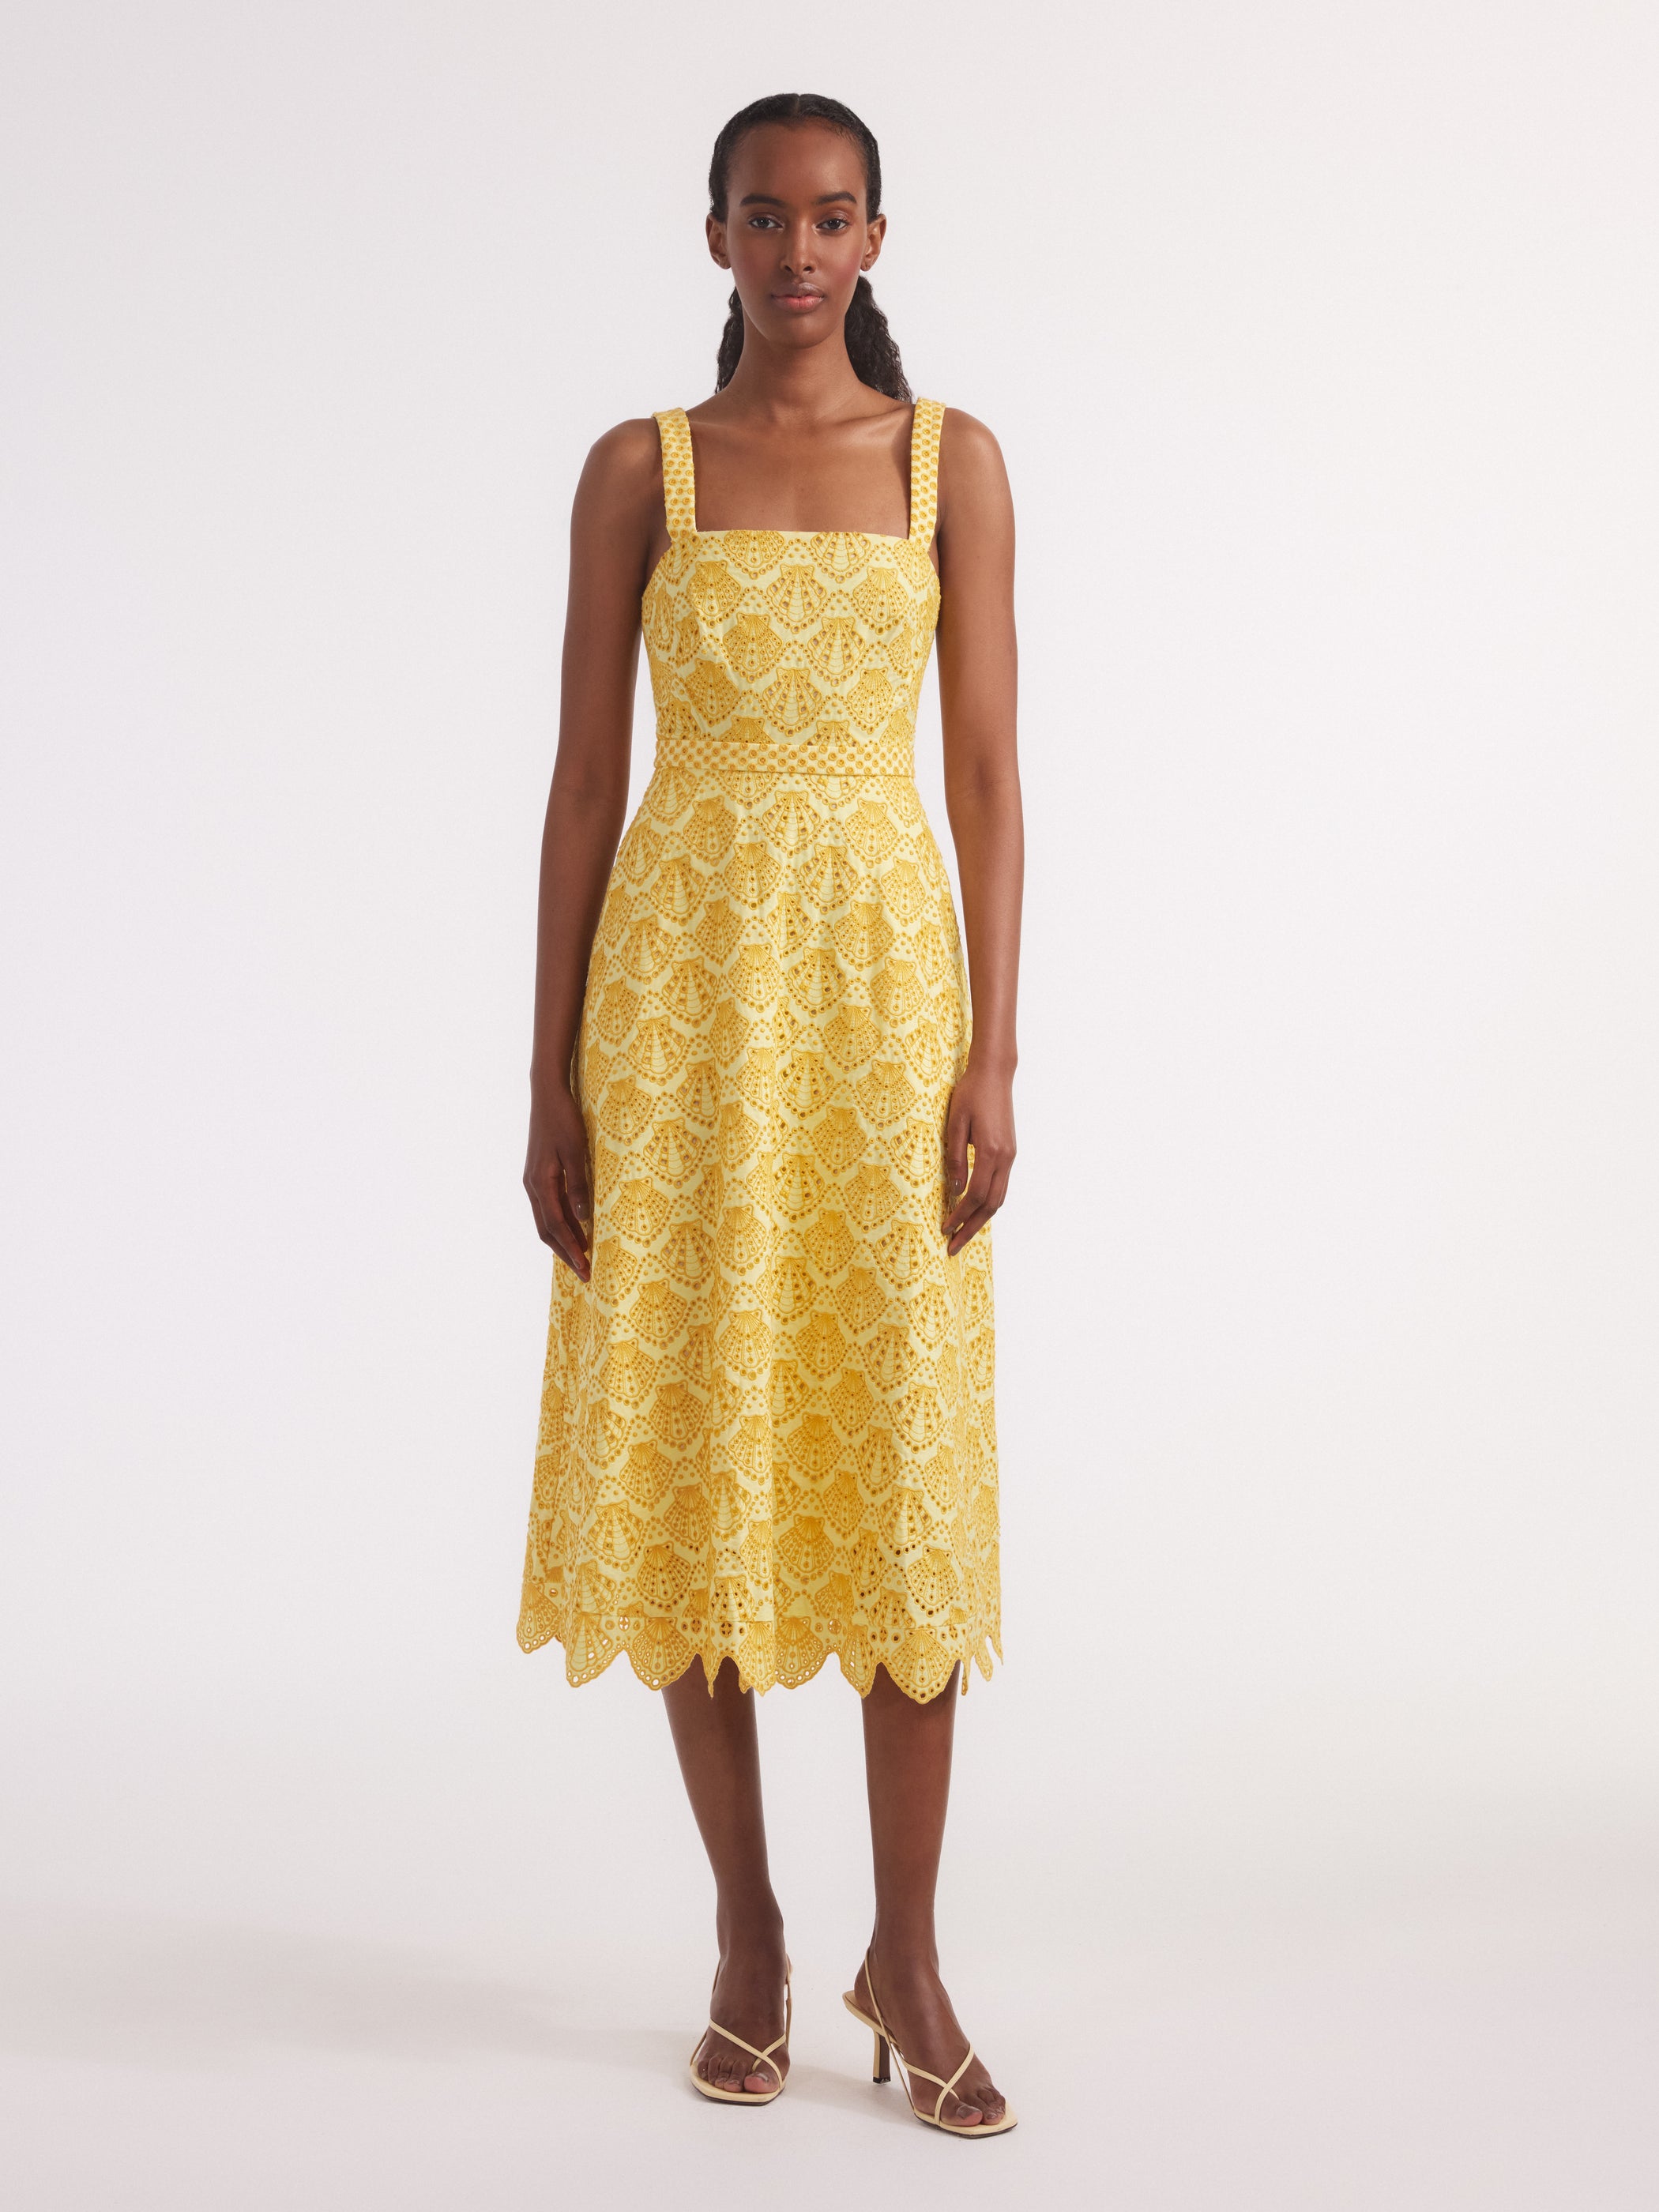 Aubrey Dress in Lemonade Yellow